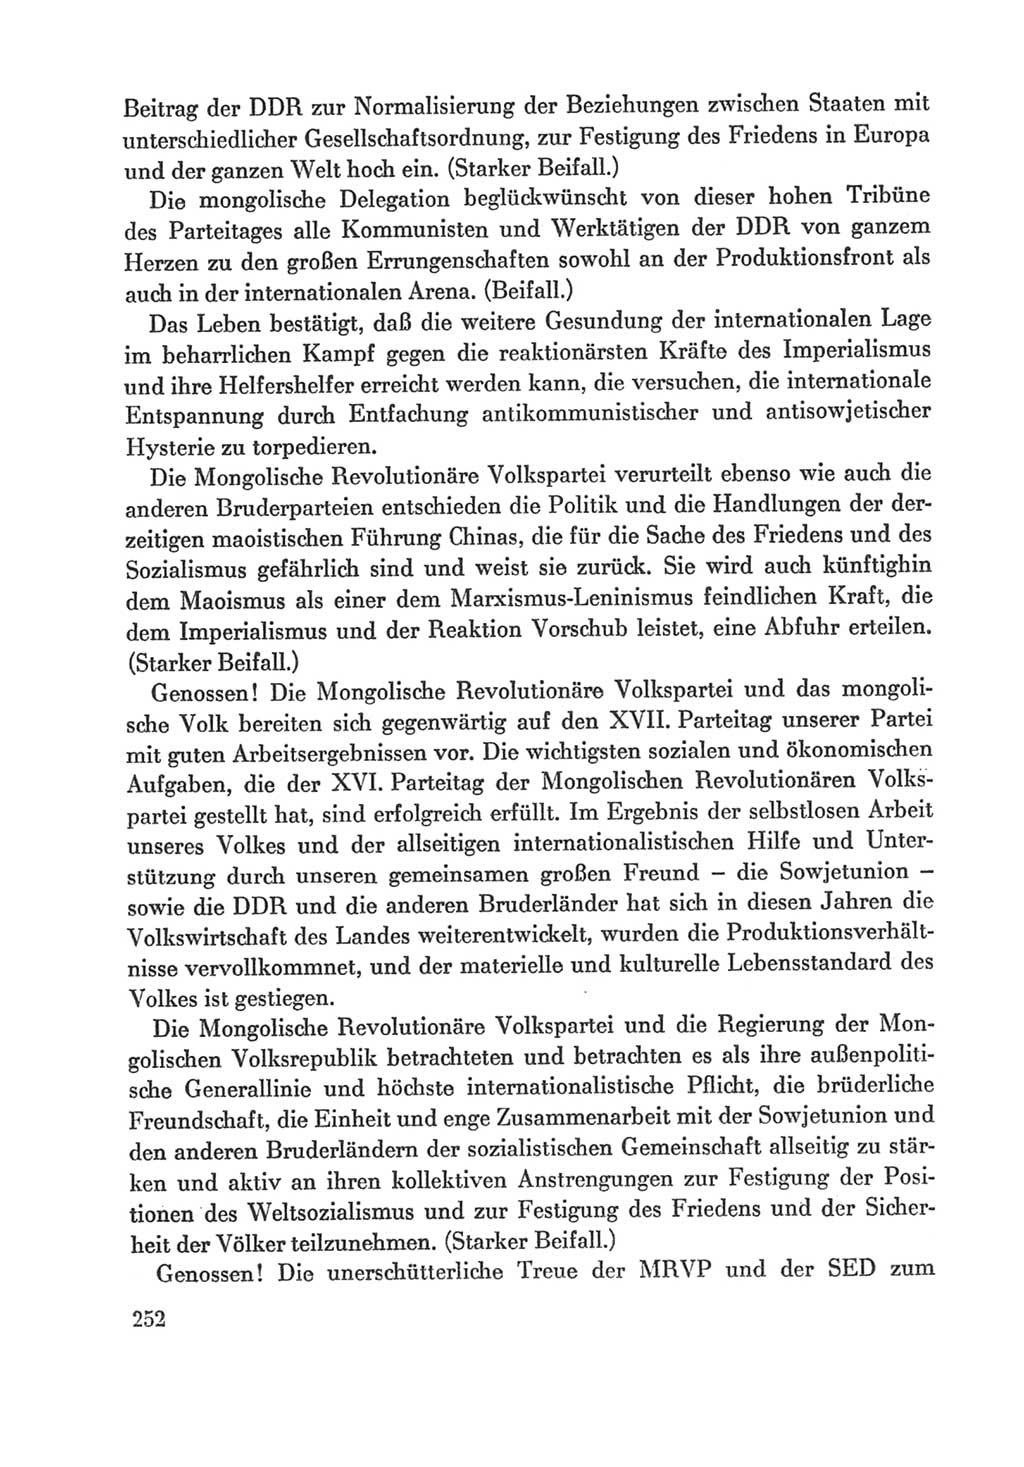 Protokoll der Verhandlungen des Ⅸ. Parteitages der Sozialistischen Einheitspartei Deutschlands (SED) [Deutsche Demokratische Republik (DDR)] 1976, Band 1, Seite 252 (Prot. Verh. Ⅸ. PT SED DDR 1976, Bd. 1, S. 252)